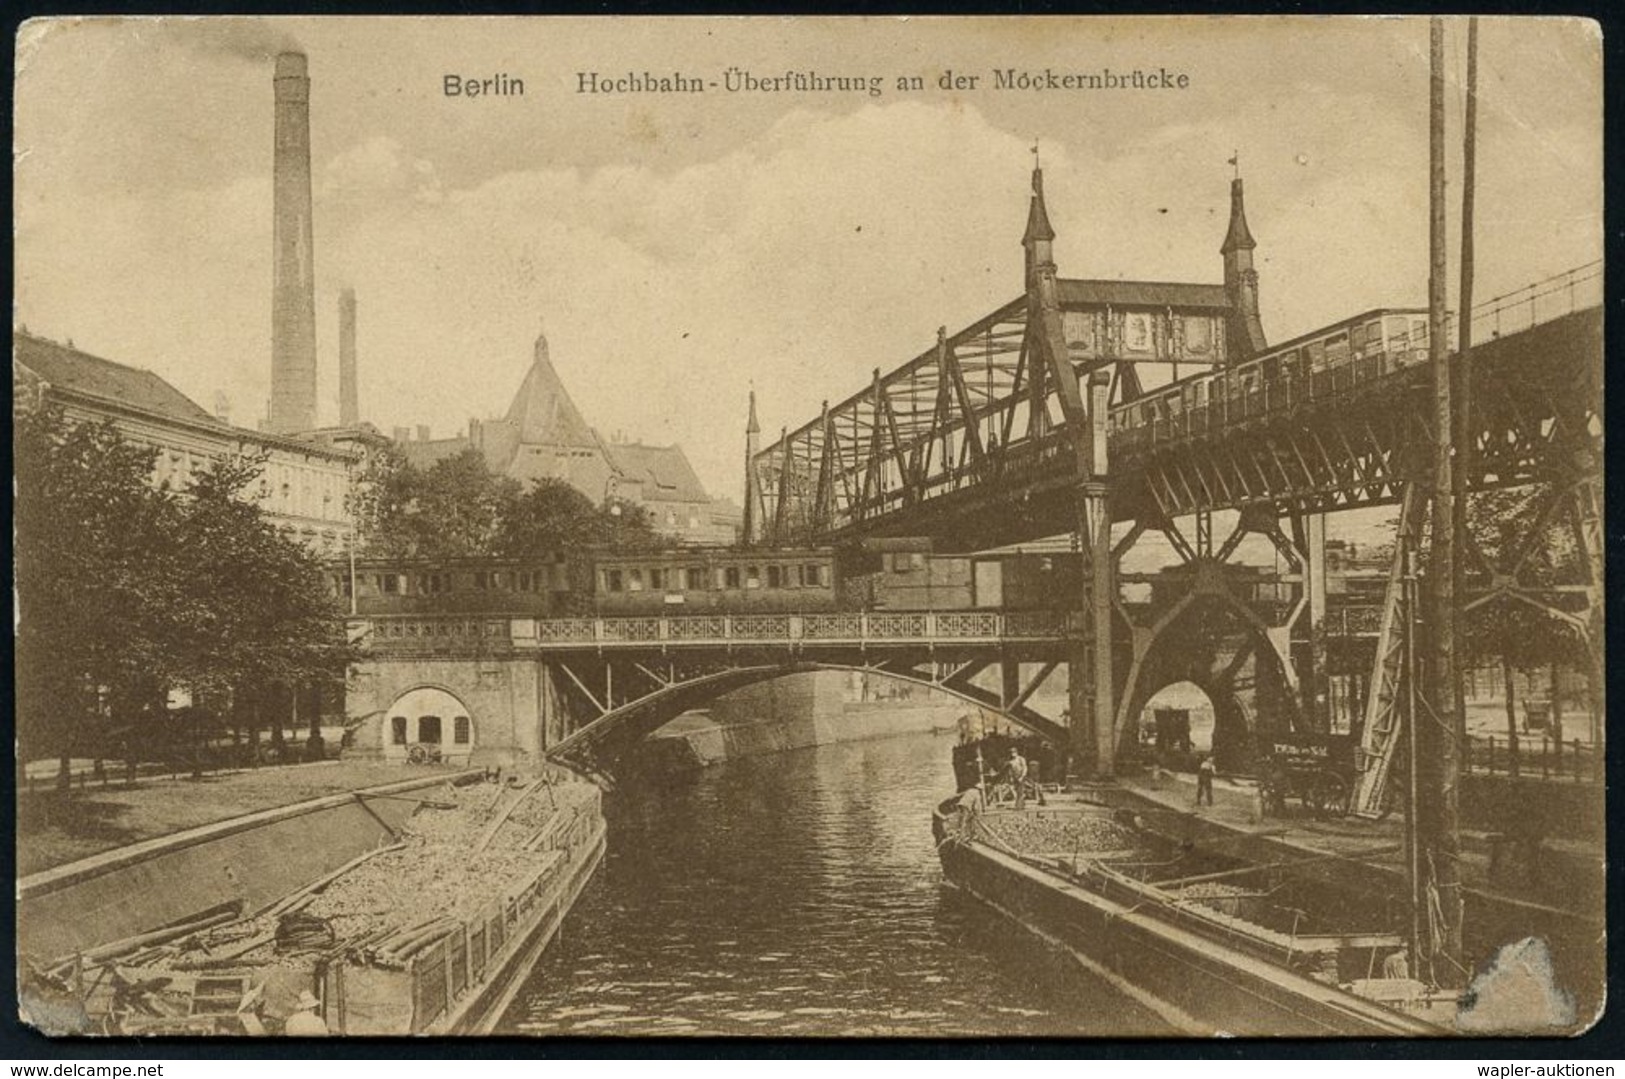 UNTERGRUNDBAHN /U-BAHN : Berlin-Kreuzberg 1907/25 U-Bahn Landwehrkanal/Anhalter Bhf., 13 Verschiedene S/w.-Foto-Ak. , Me - Eisenbahnen